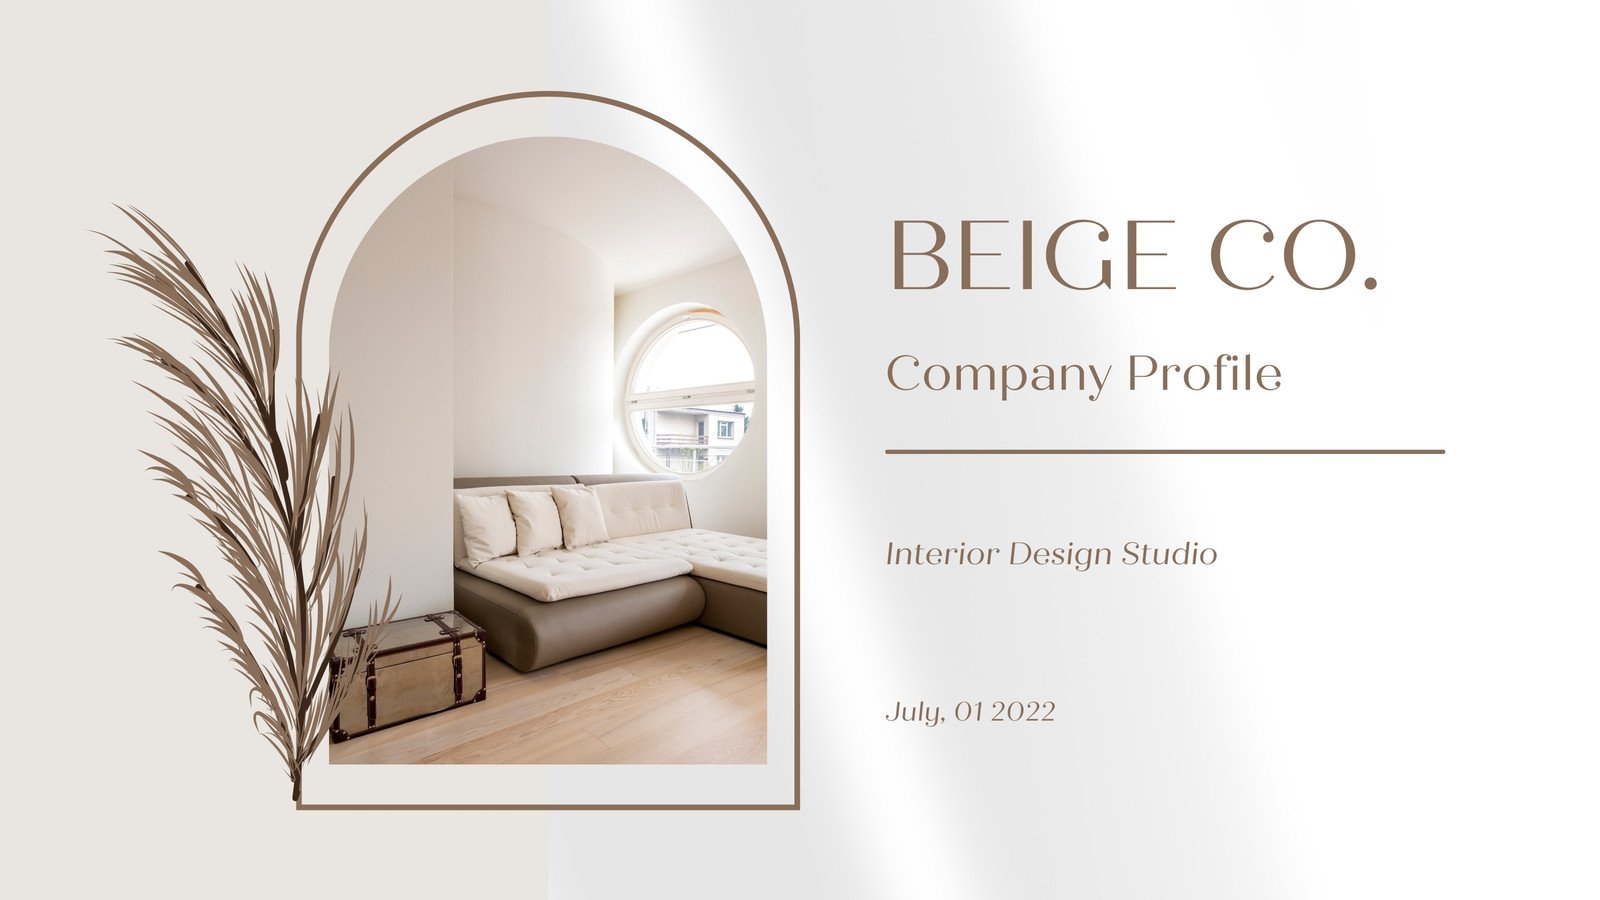 interior design presentation layout